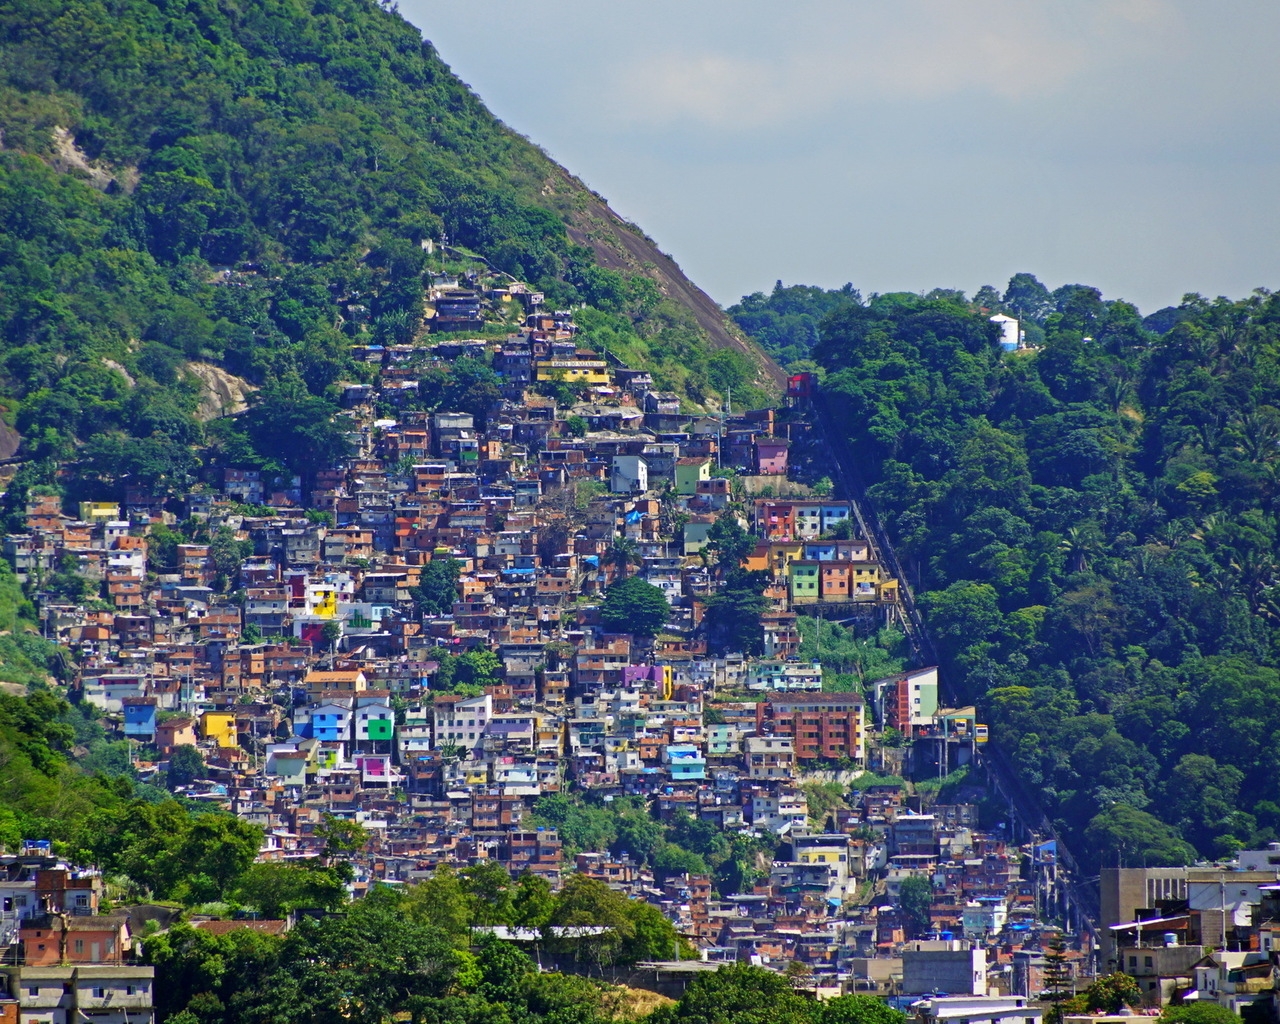 Rio de Janeiro Mountains Houses for 1280 x 1024 resolution